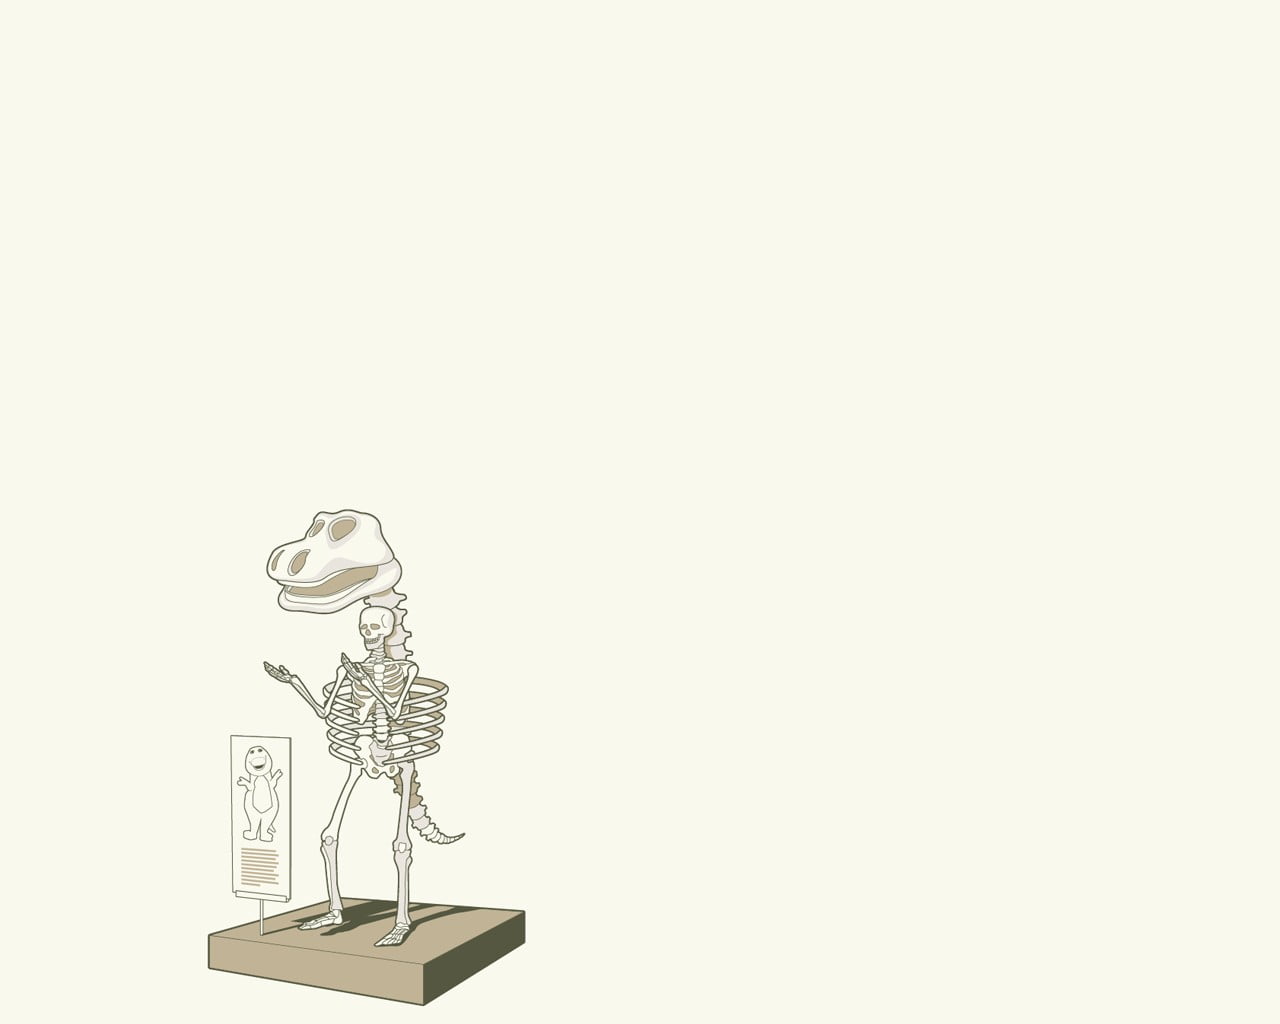 white barney skeleton illustration, simple background, humor